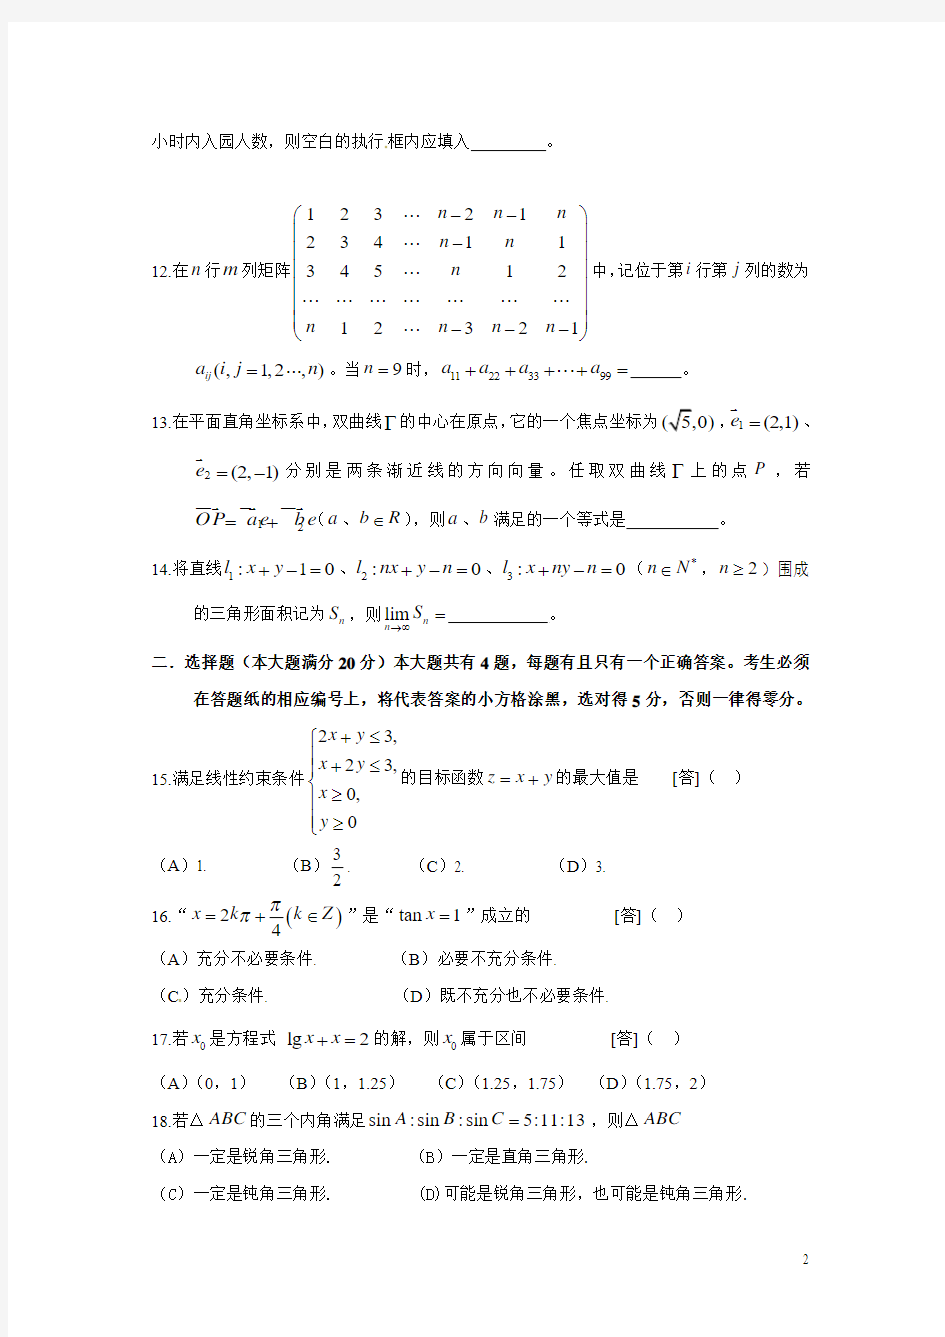 2010年高考上海文科数学试卷及答案